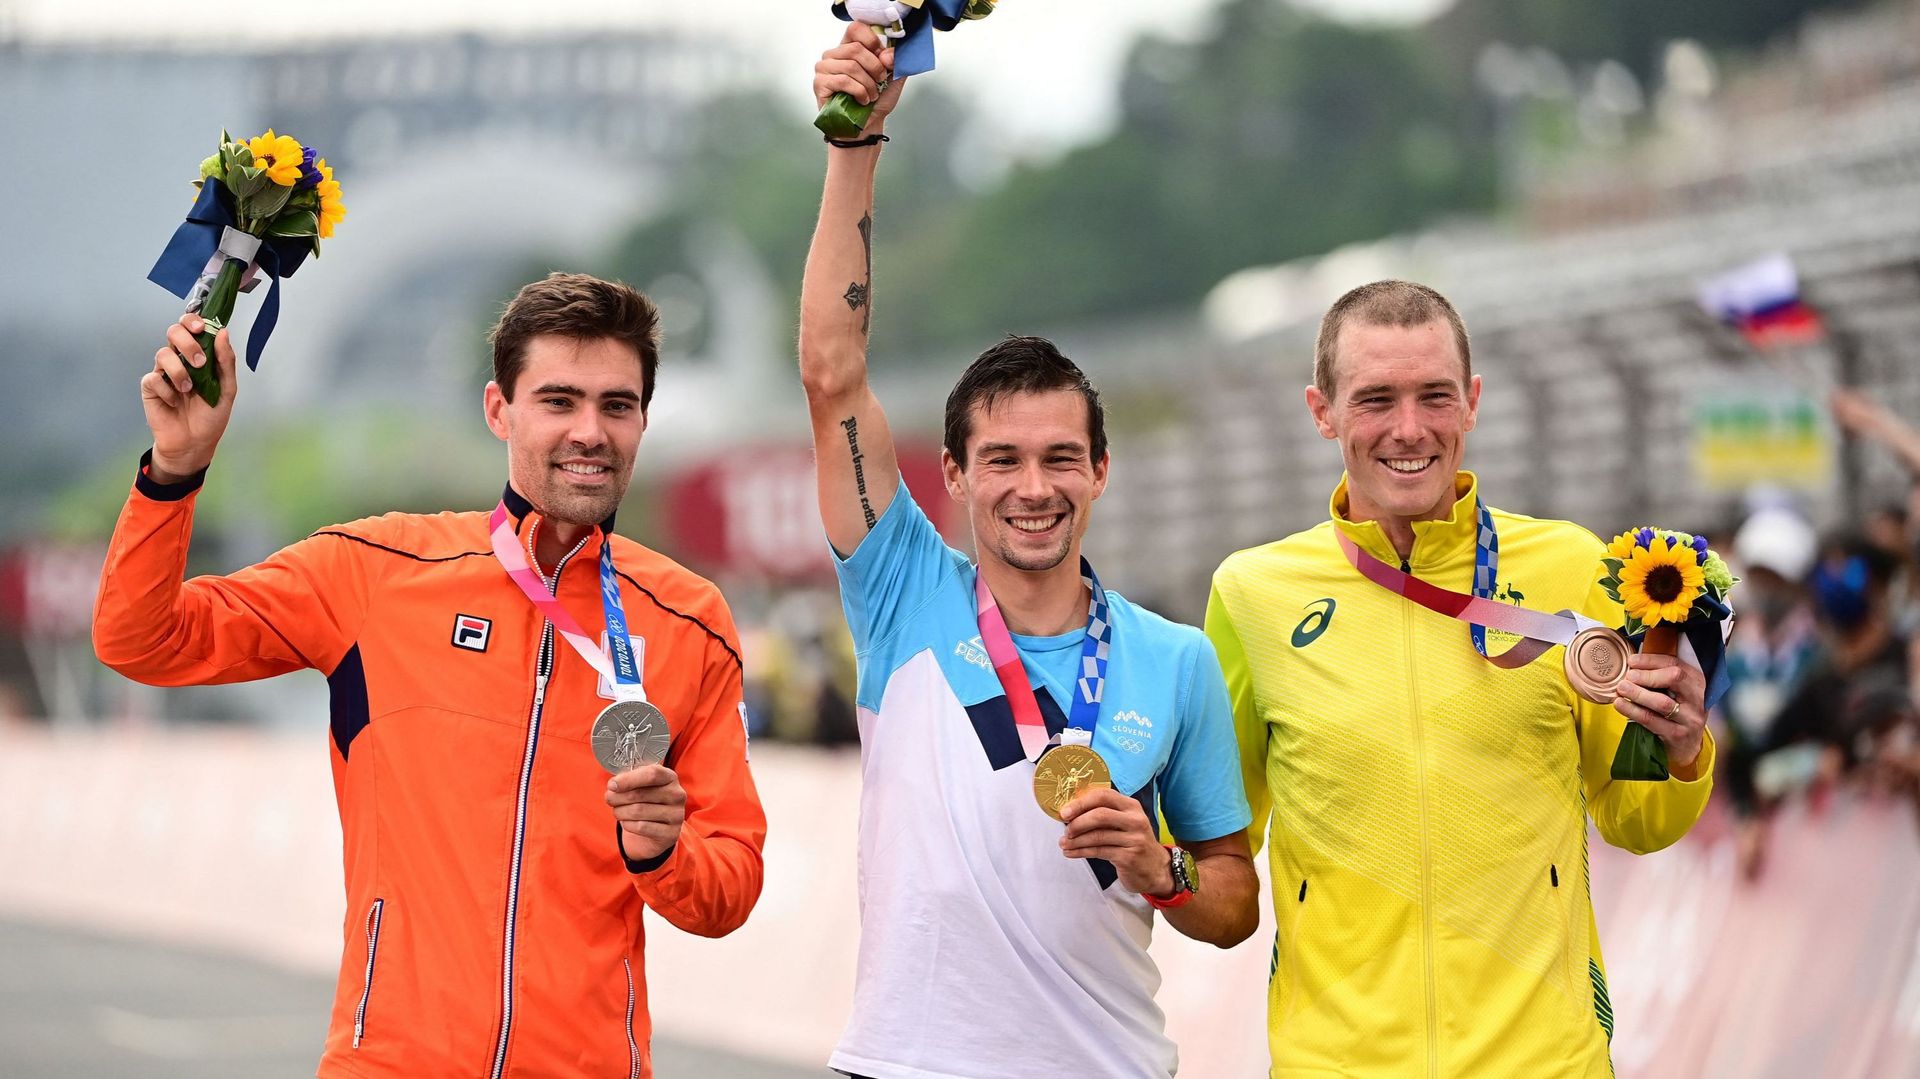 Le Néerlandais Tom Dumoulin a annoncé qu’il continuera à faire du cyclisme mercredi après sa médaille d’argent dans le contre-la-montre individuel aux Jeux Olympiques de Tokyo.